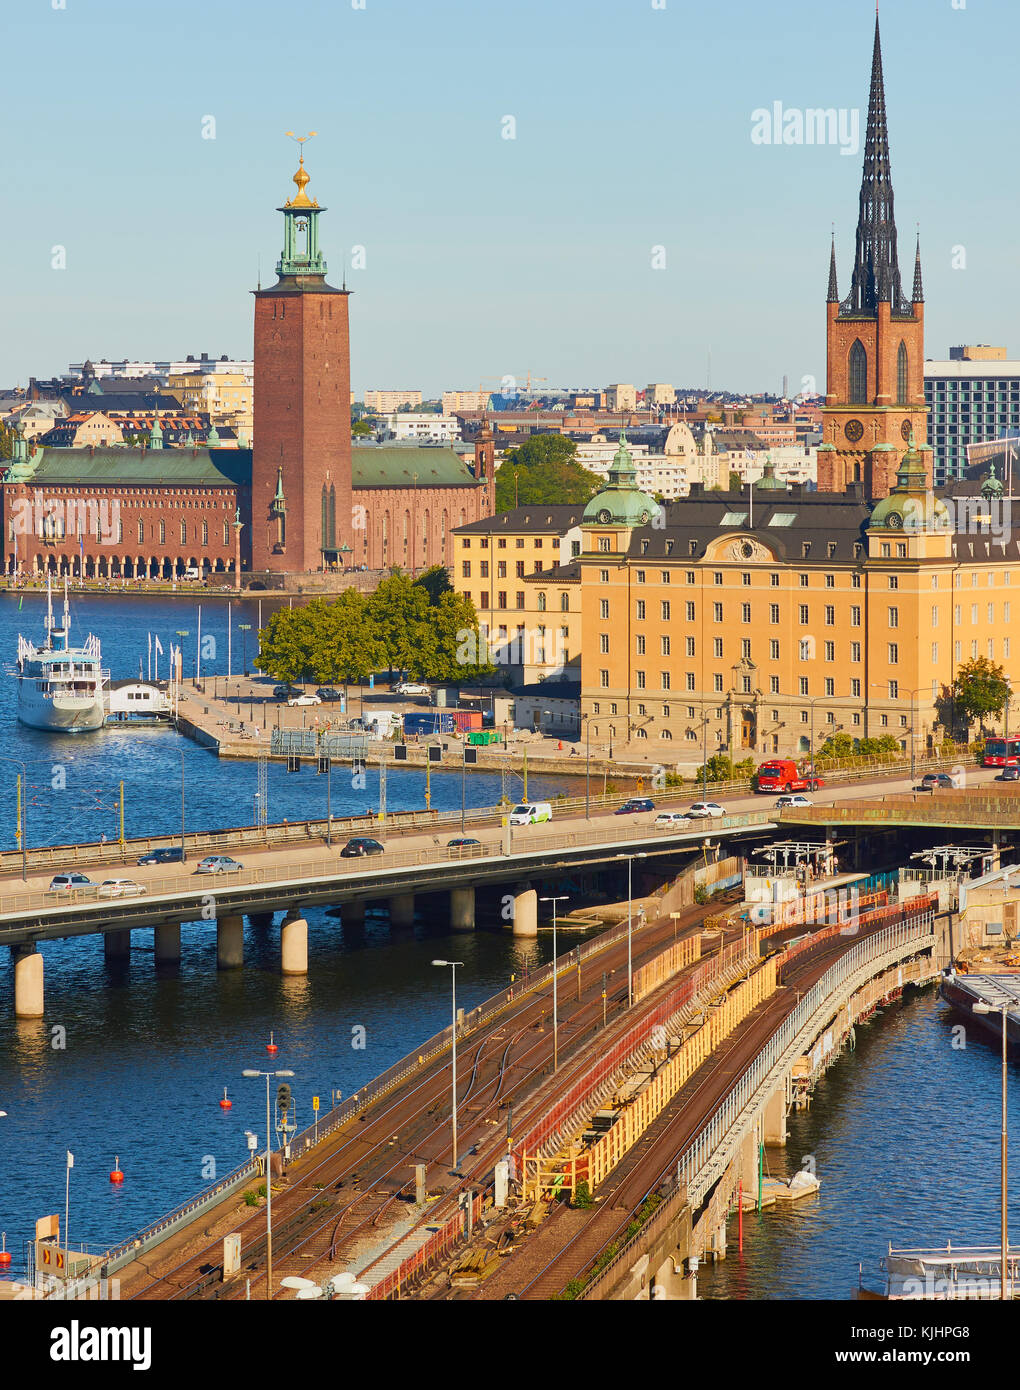 Stadtbild mit Centralbron (Zentrale Brücke) ein wichtiger Verkehrsweg im Zentrum von Stockholm und Brücke für Fracht- und Personenzüge, Stockholm, Schweden Stockfoto